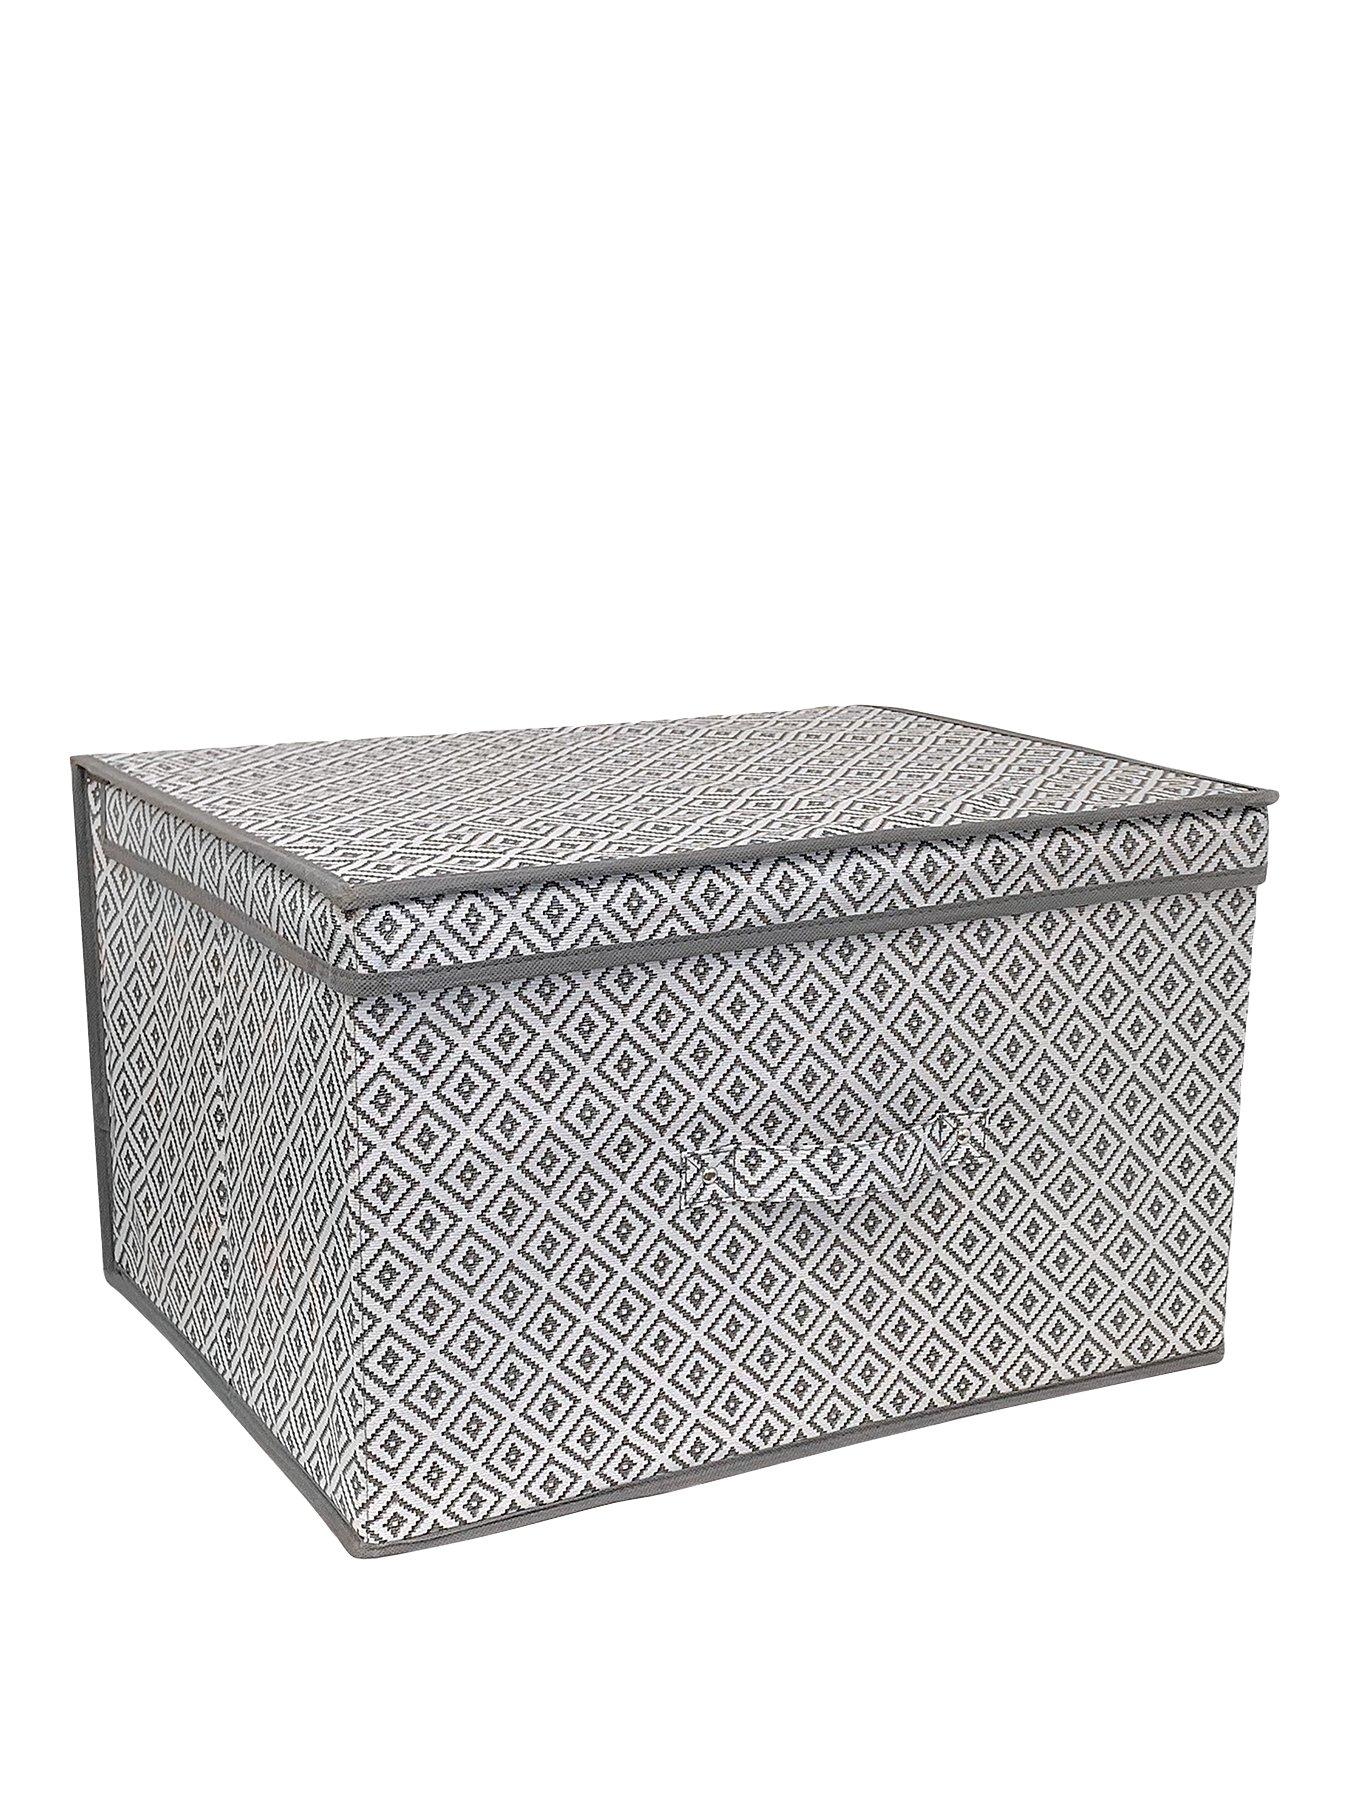 Premier Housewares Folding Storage Box Grey 19cm 35 x 25 x 19cm 